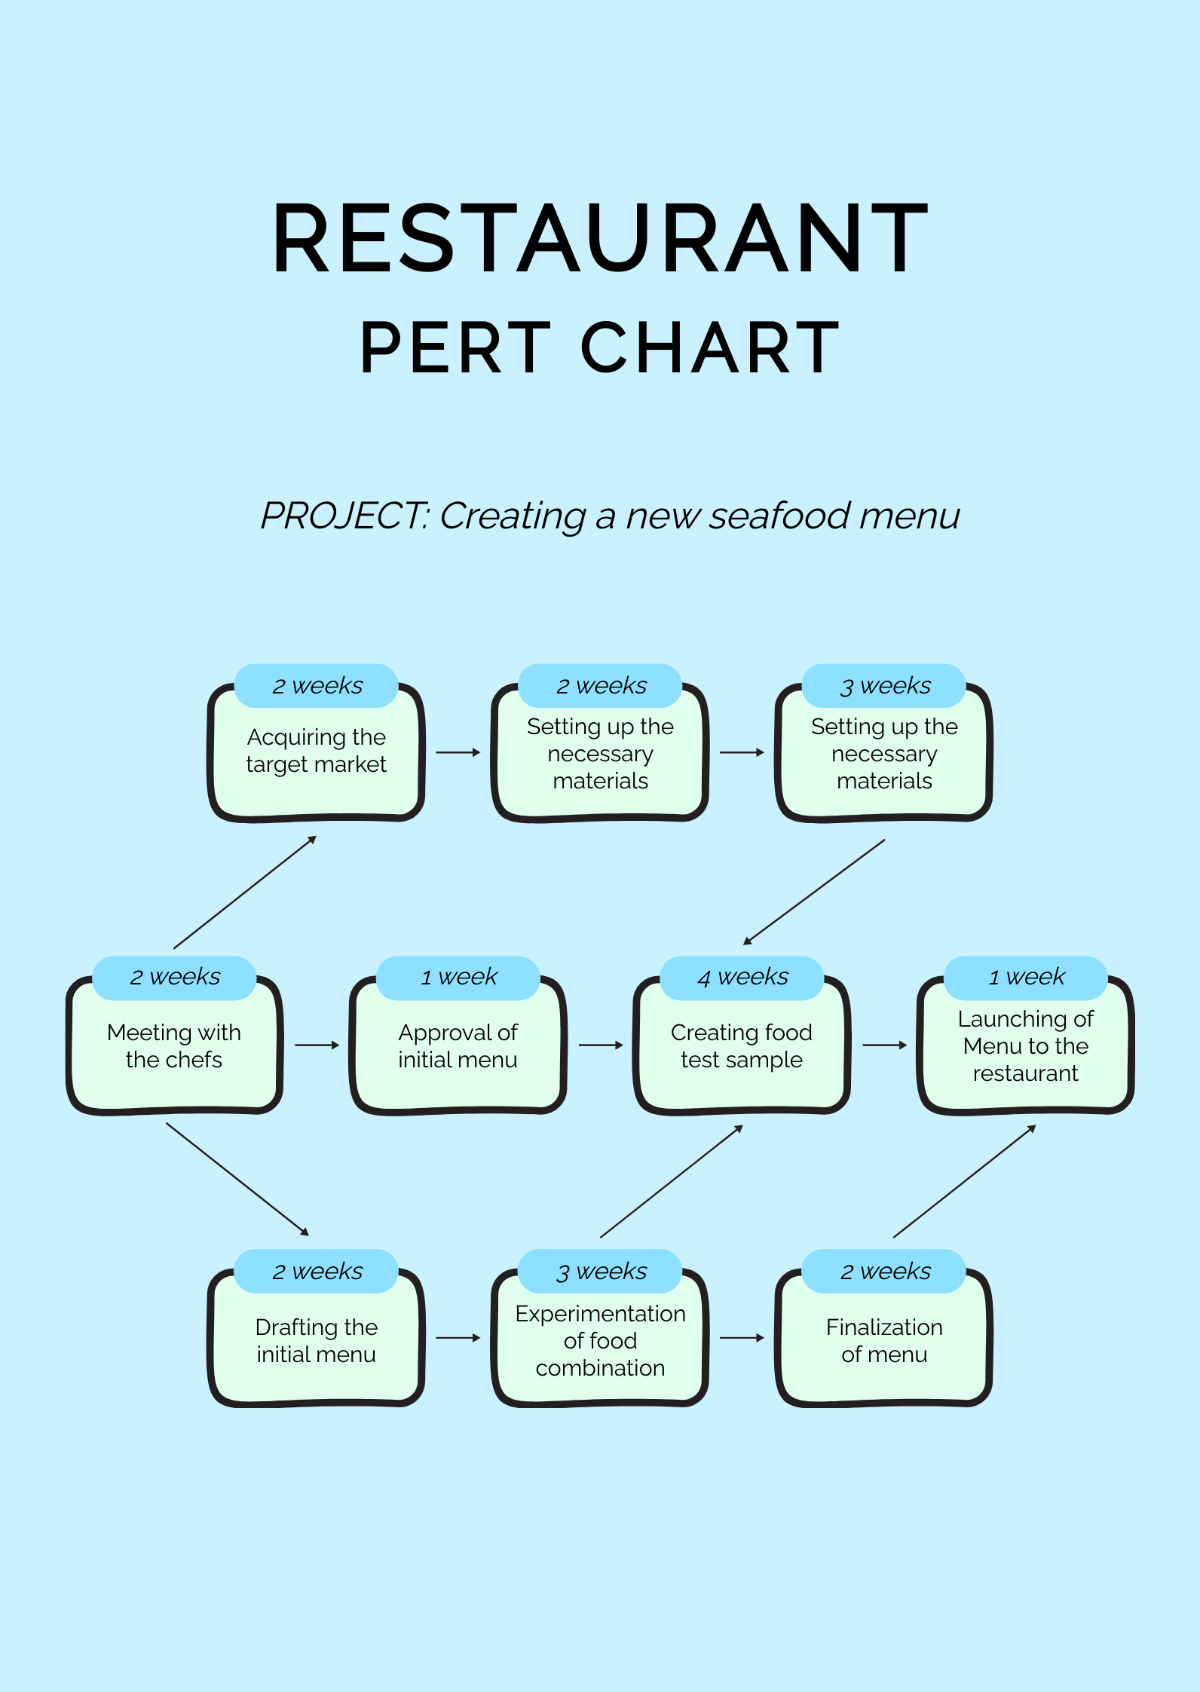 Restaurant PERT Chart Template